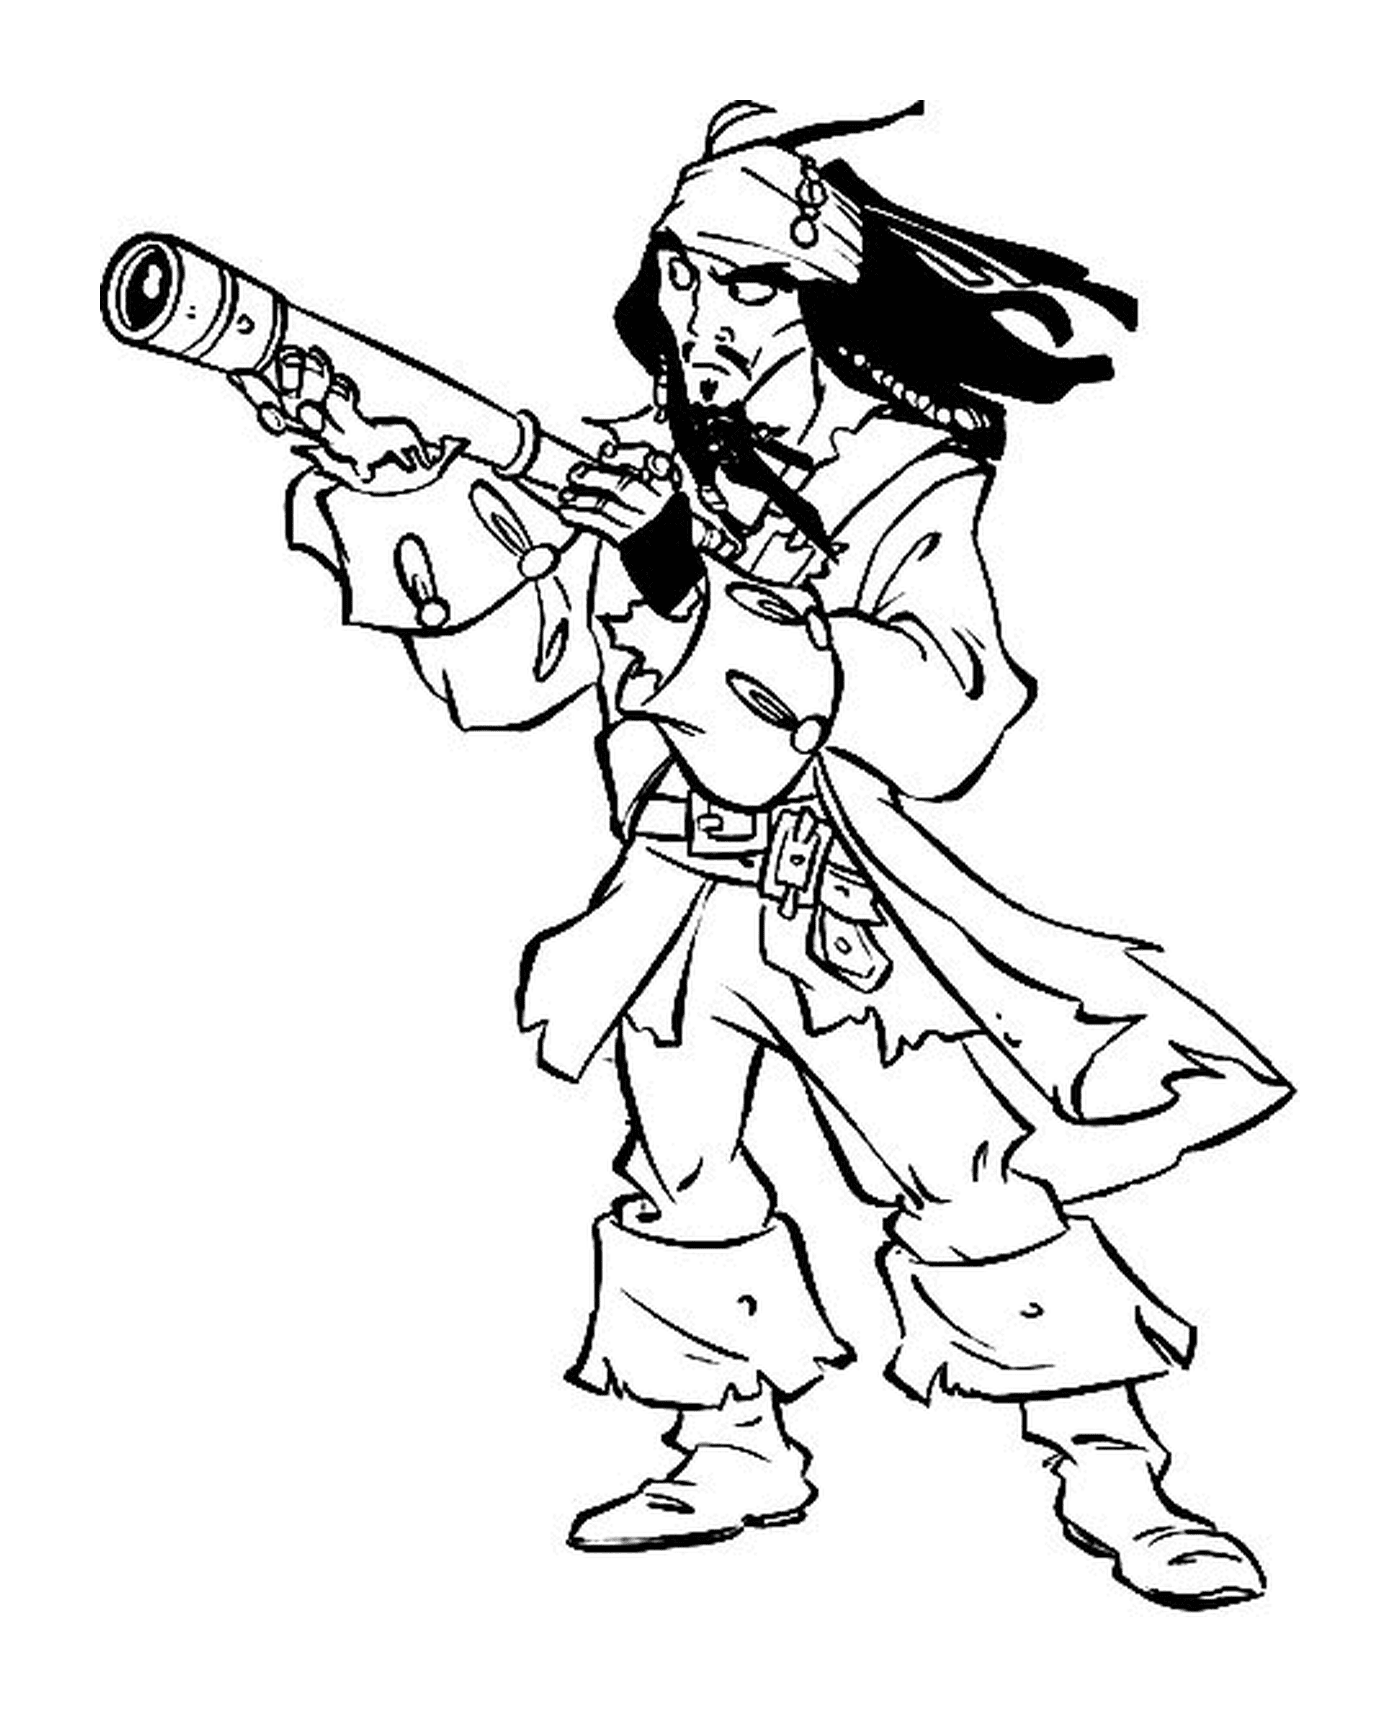  Jack Sparrow com sua longa visão 